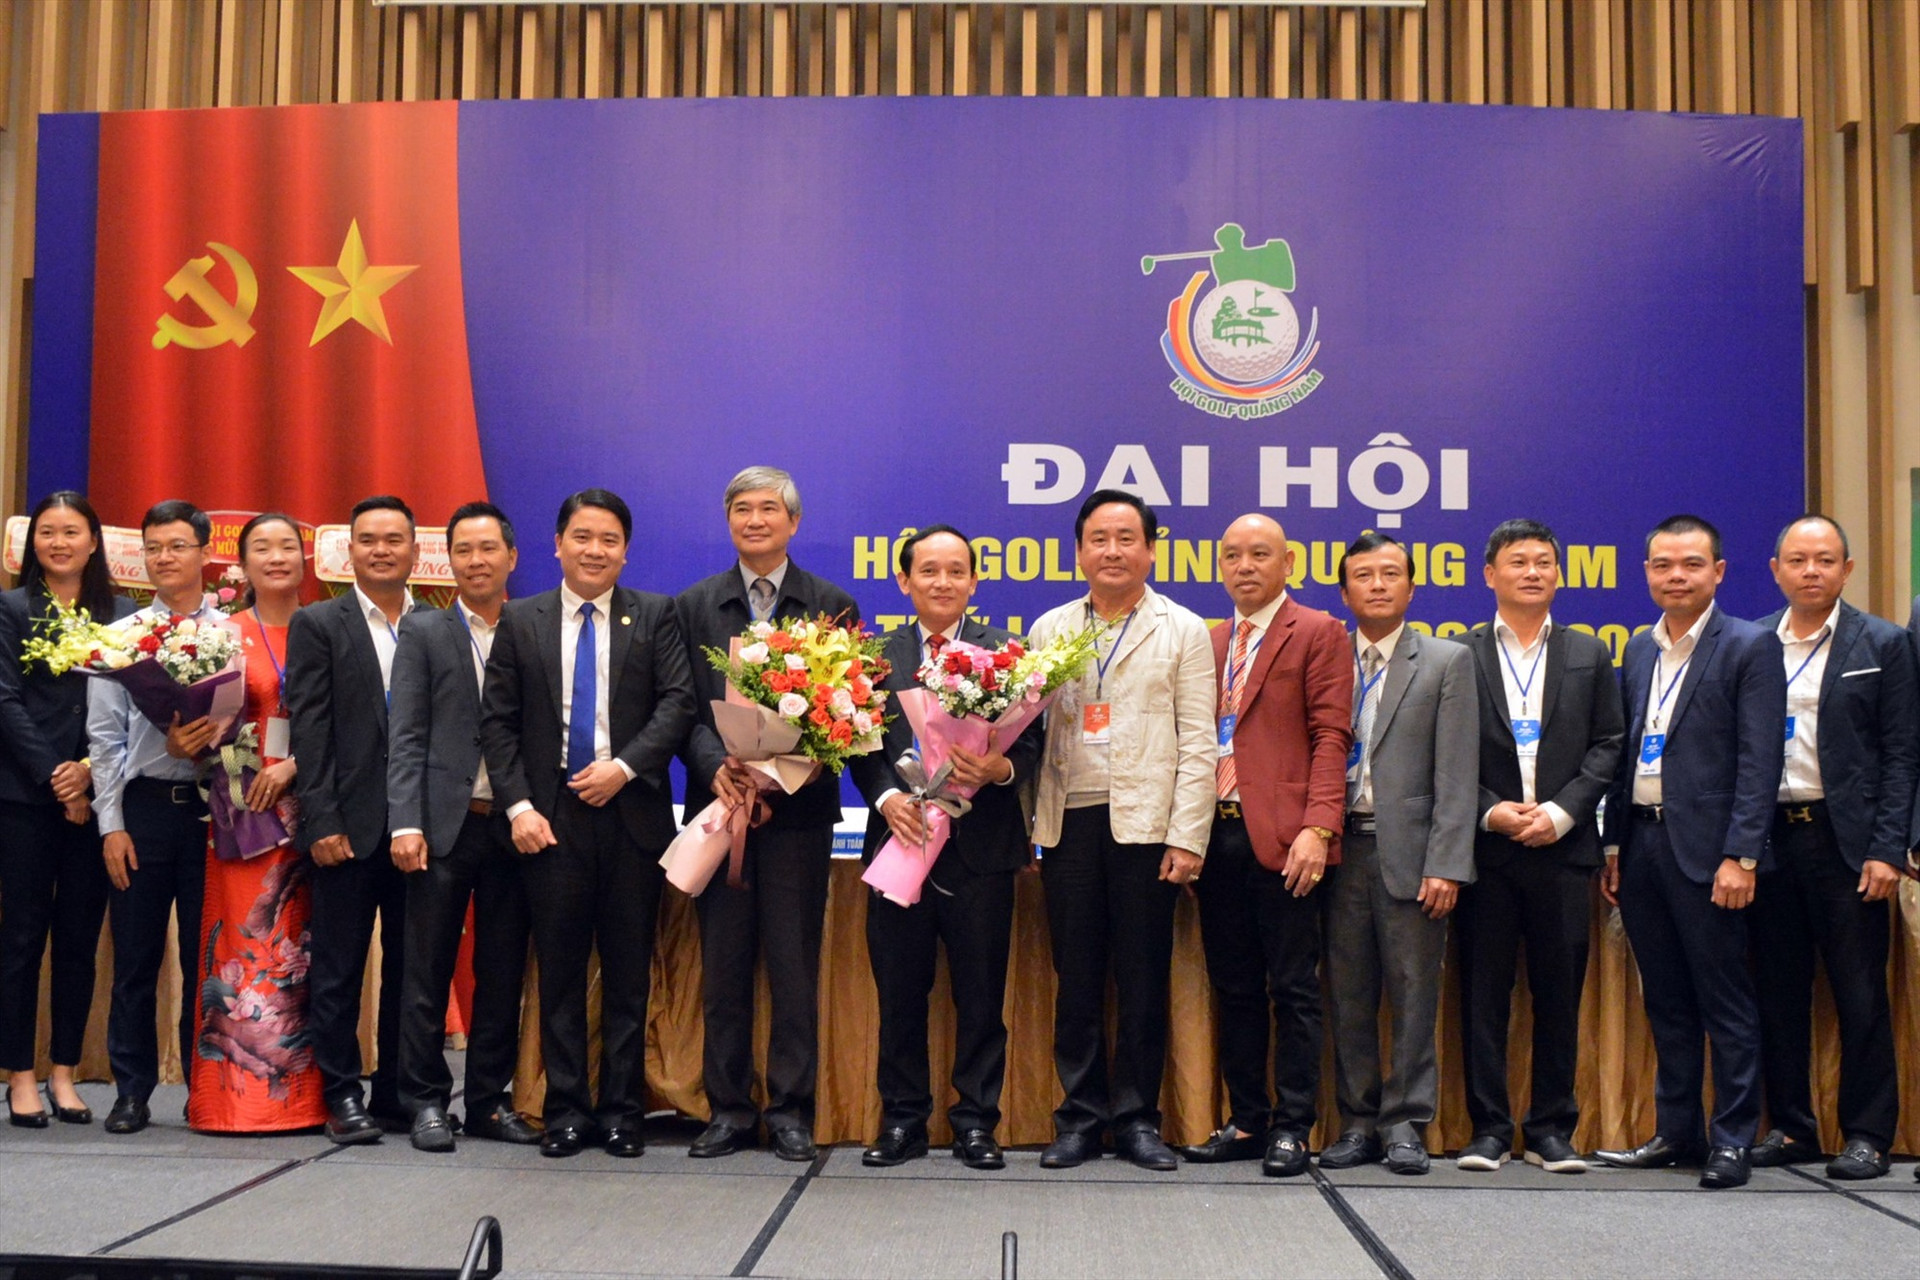 Ban chấp hành Hội Golf tỉnh Quảng Nam nhiệm kỳ 2020 - 2025